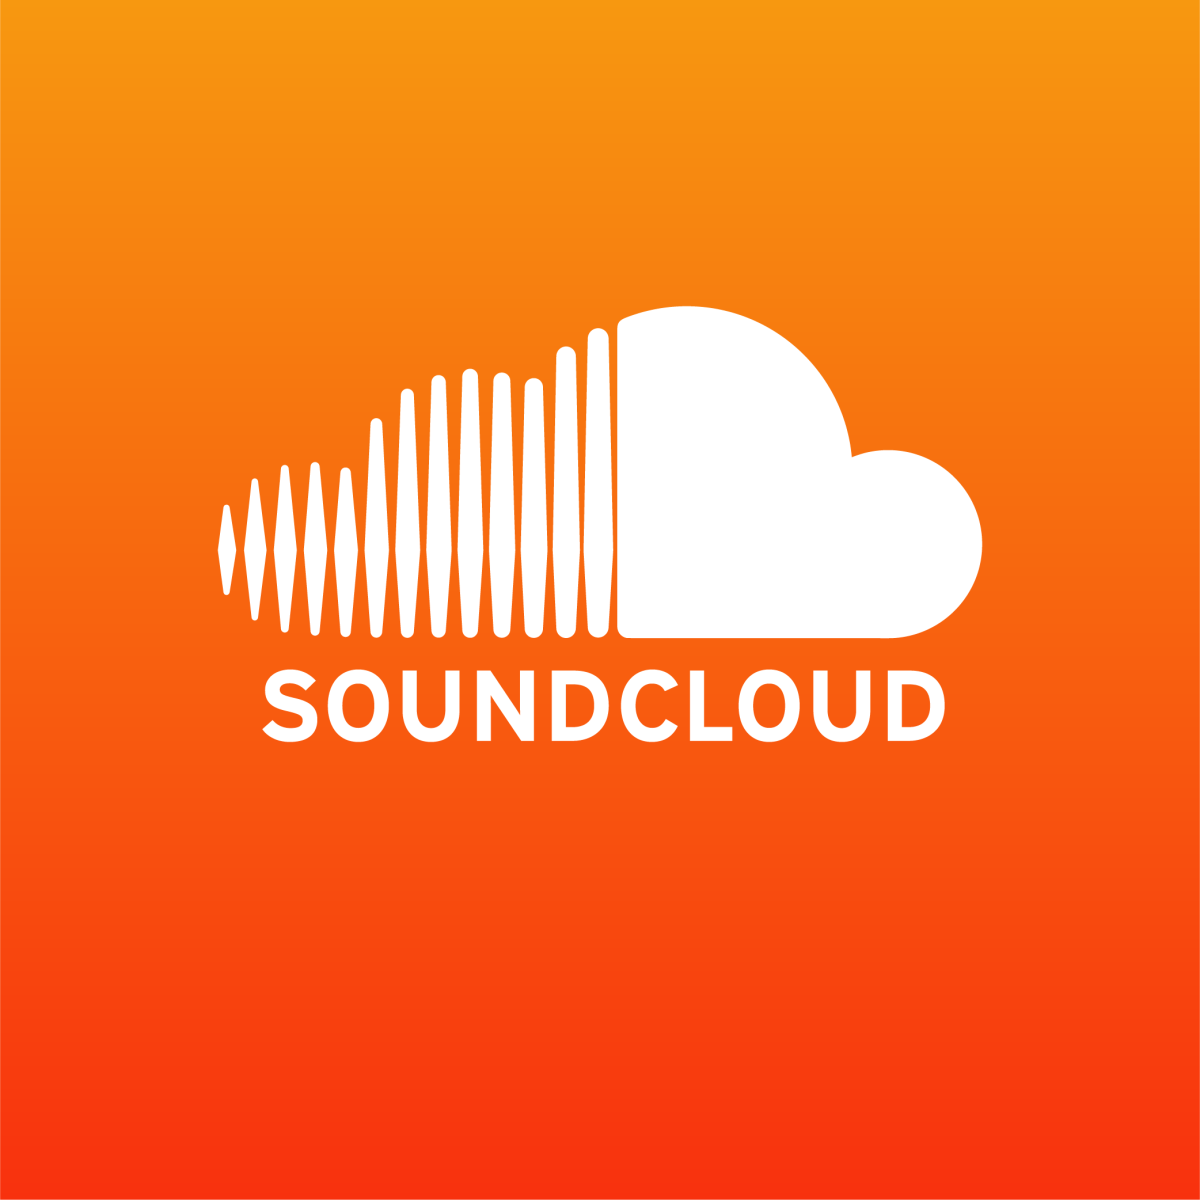 Listen on Soundcloud (copia) (copia)